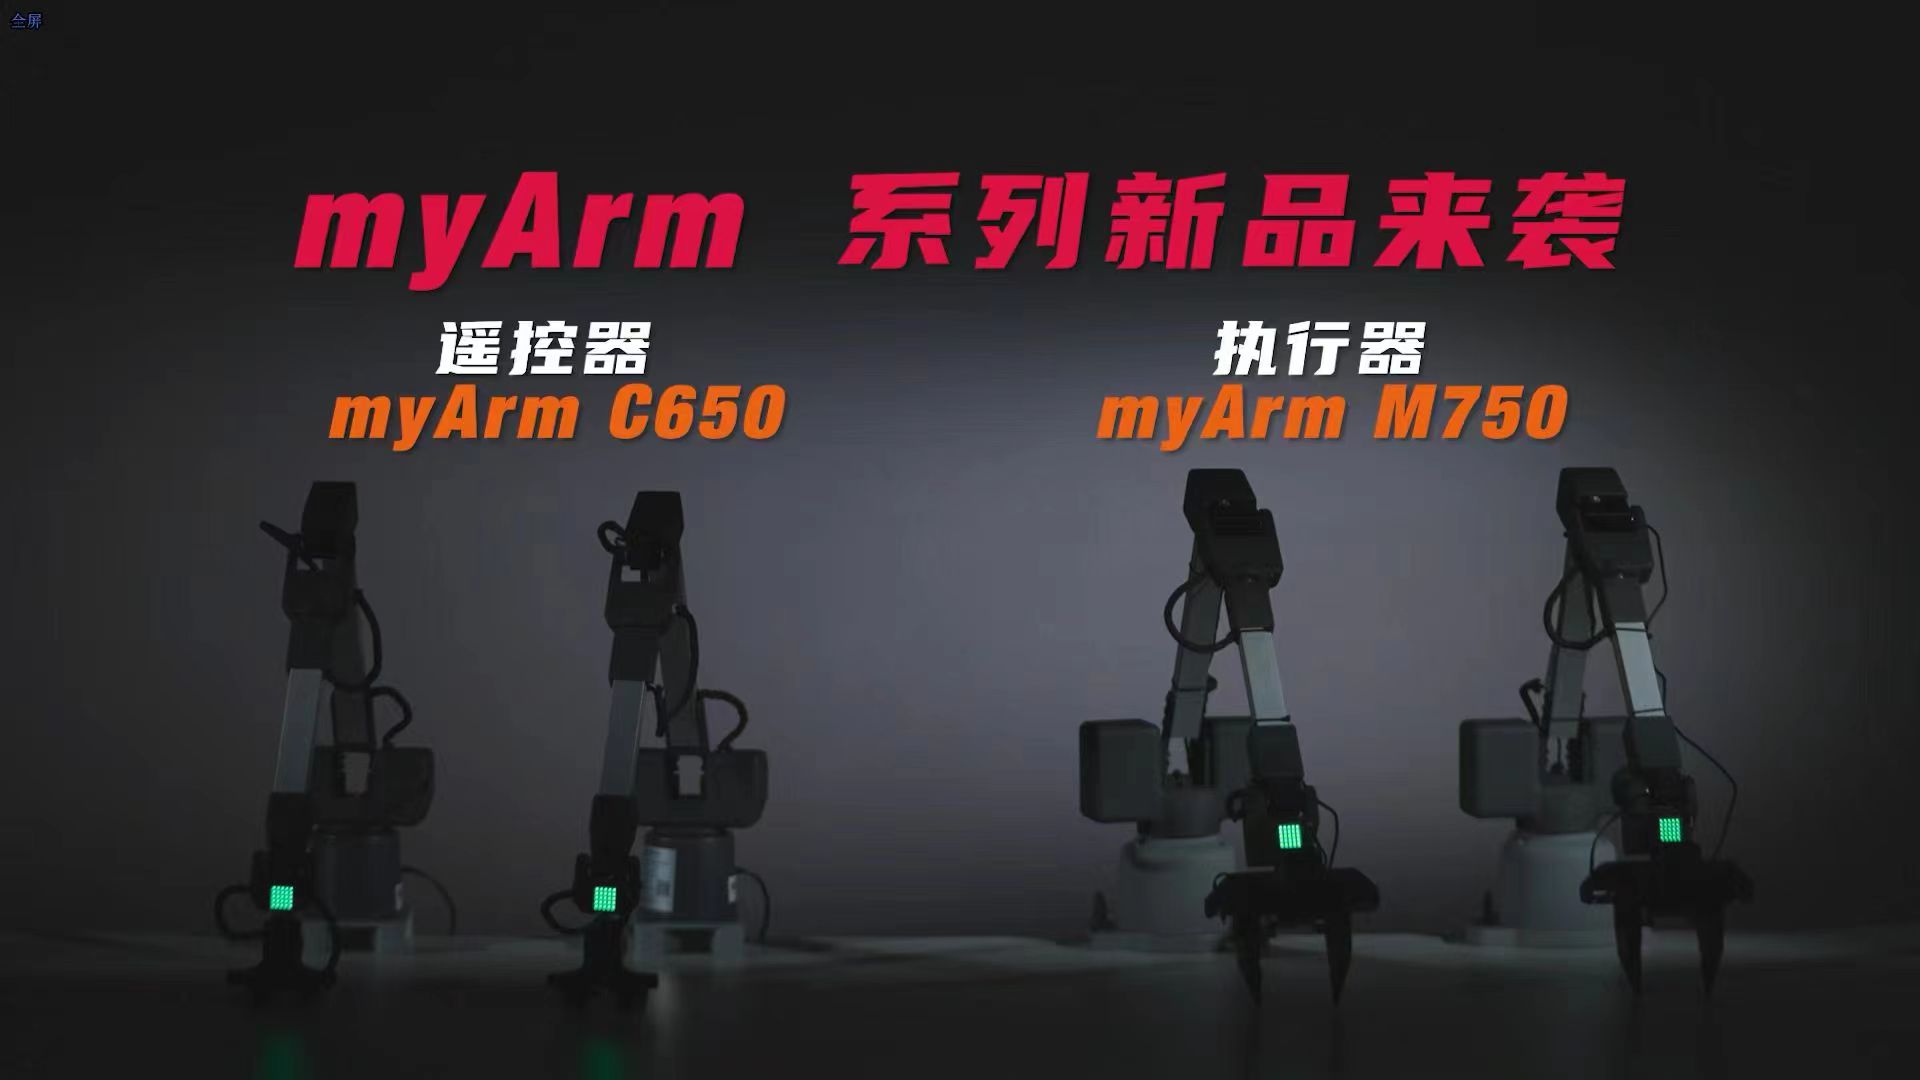 开启具身智能研究新篇章！大象机器人推出智能遥操作机械臂组合myArm M&C！